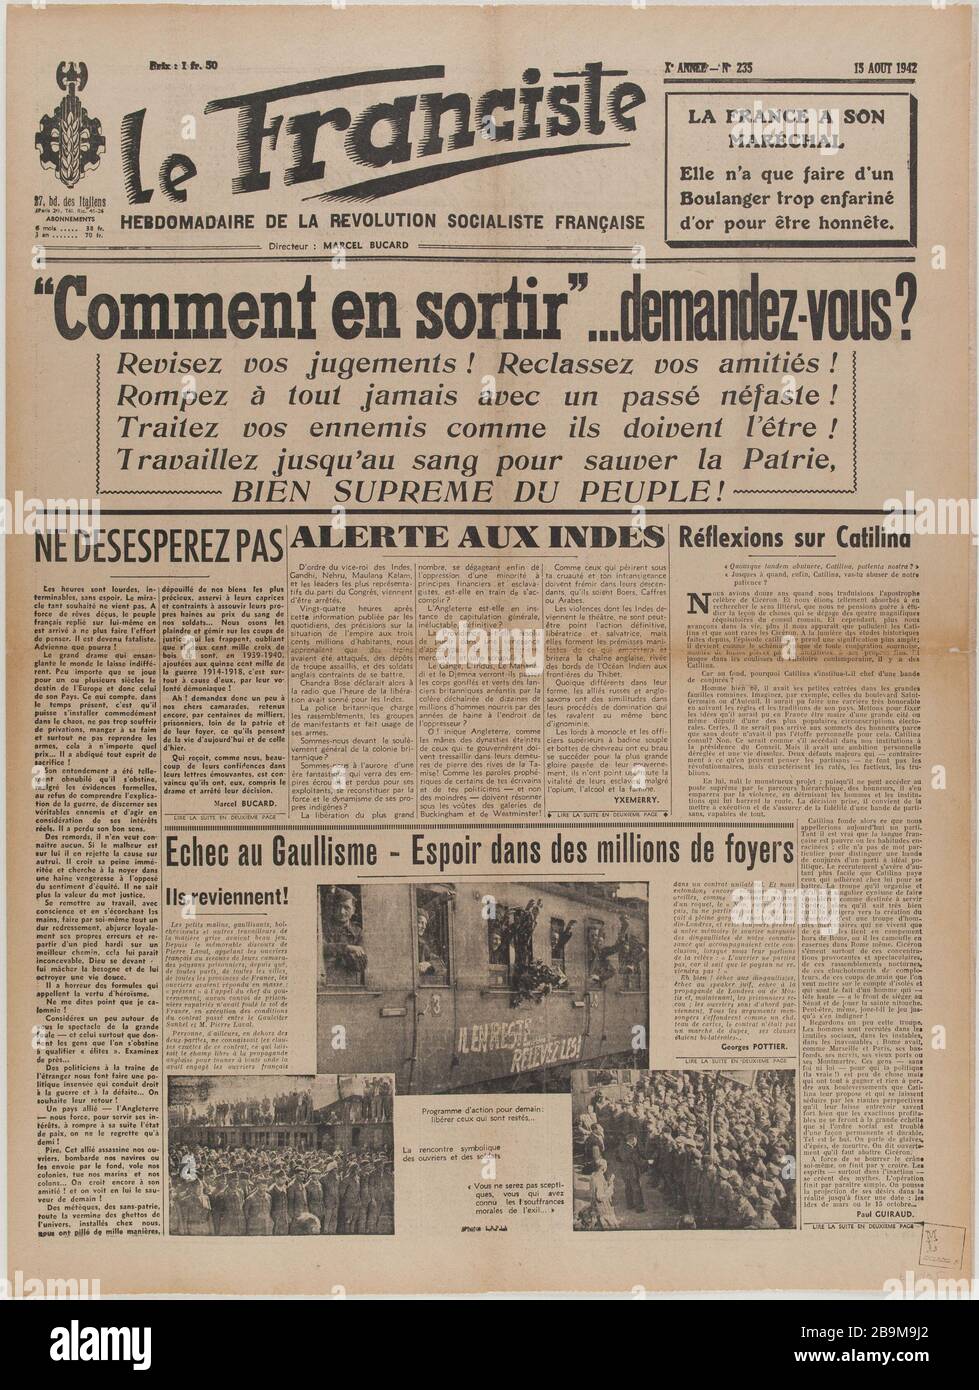 Newspaper "The Franciste" of August 15, 1942 Journal "Le Franciste" du 15 août 1942. Papier imprimé, 1942. Musée du Général Leclerc de Hauteclocque et de la Libération de Paris, musée Jean Moulin. Stock Photo